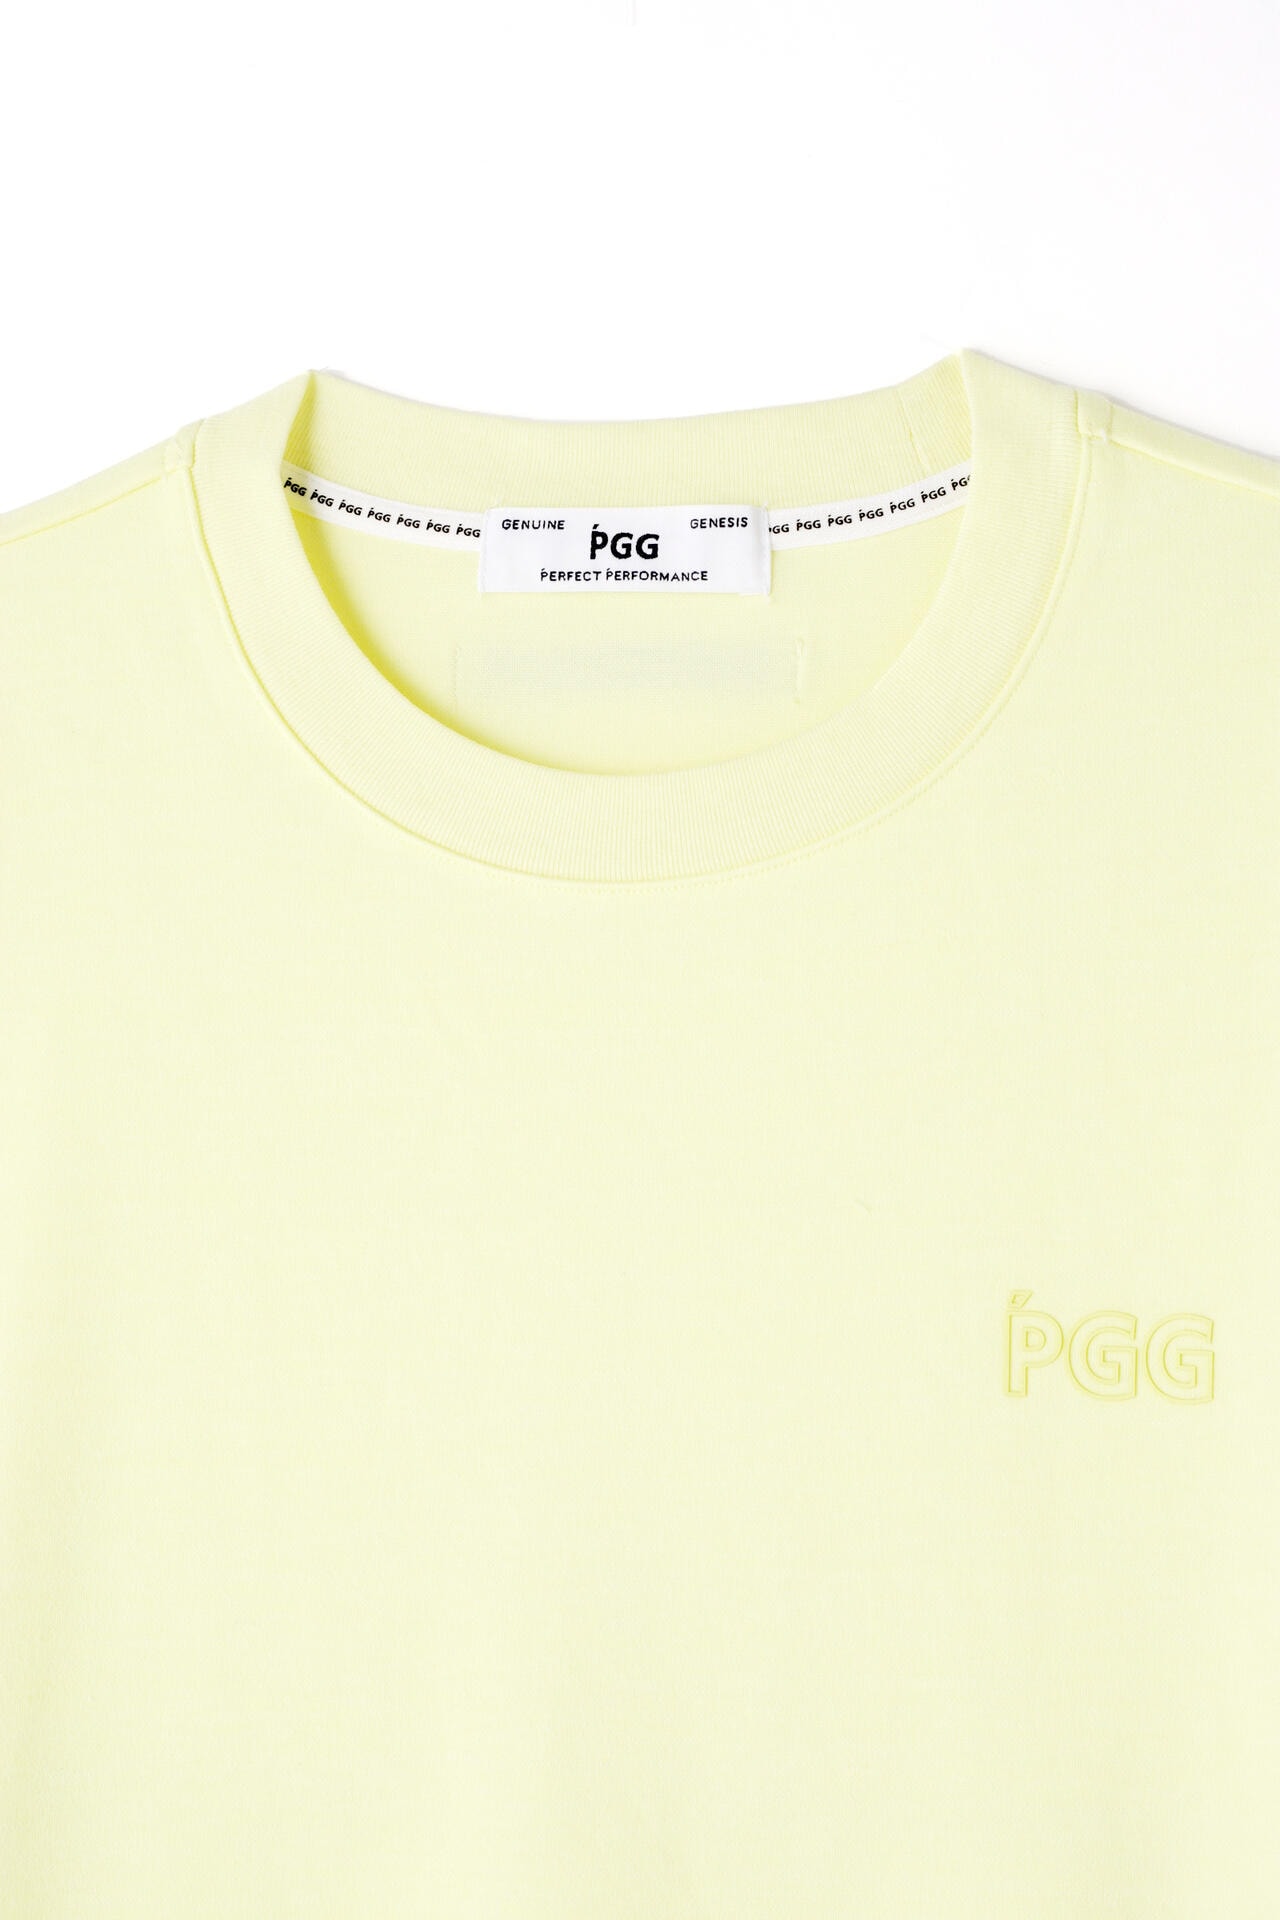 ピージージー】【PGG】【PERFECT】パルパーエコ×ハイグラ 半袖Tシャツ 